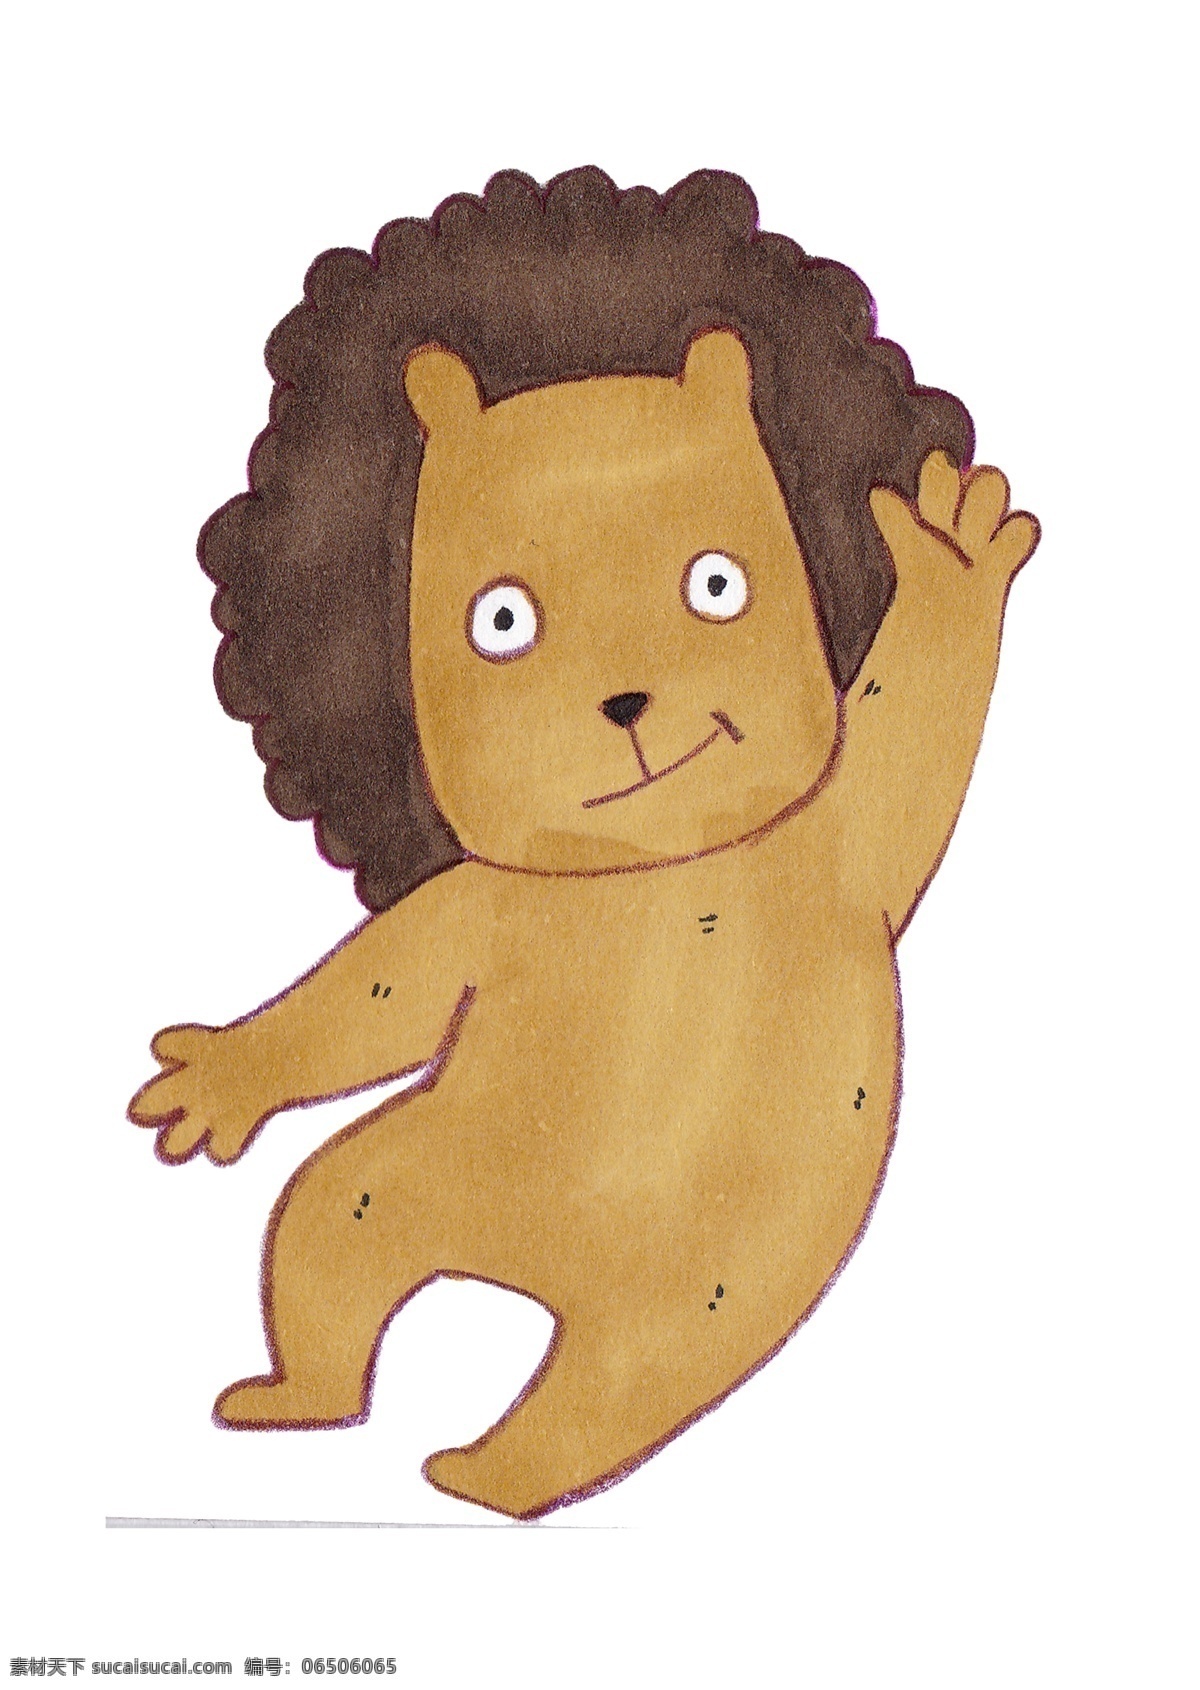 卡通 手绘 打招呼 狮子 插画 猫科动物 百兽之王 肉食 棕色 头顶卷毛 王者风范 卡通手绘 动物插画